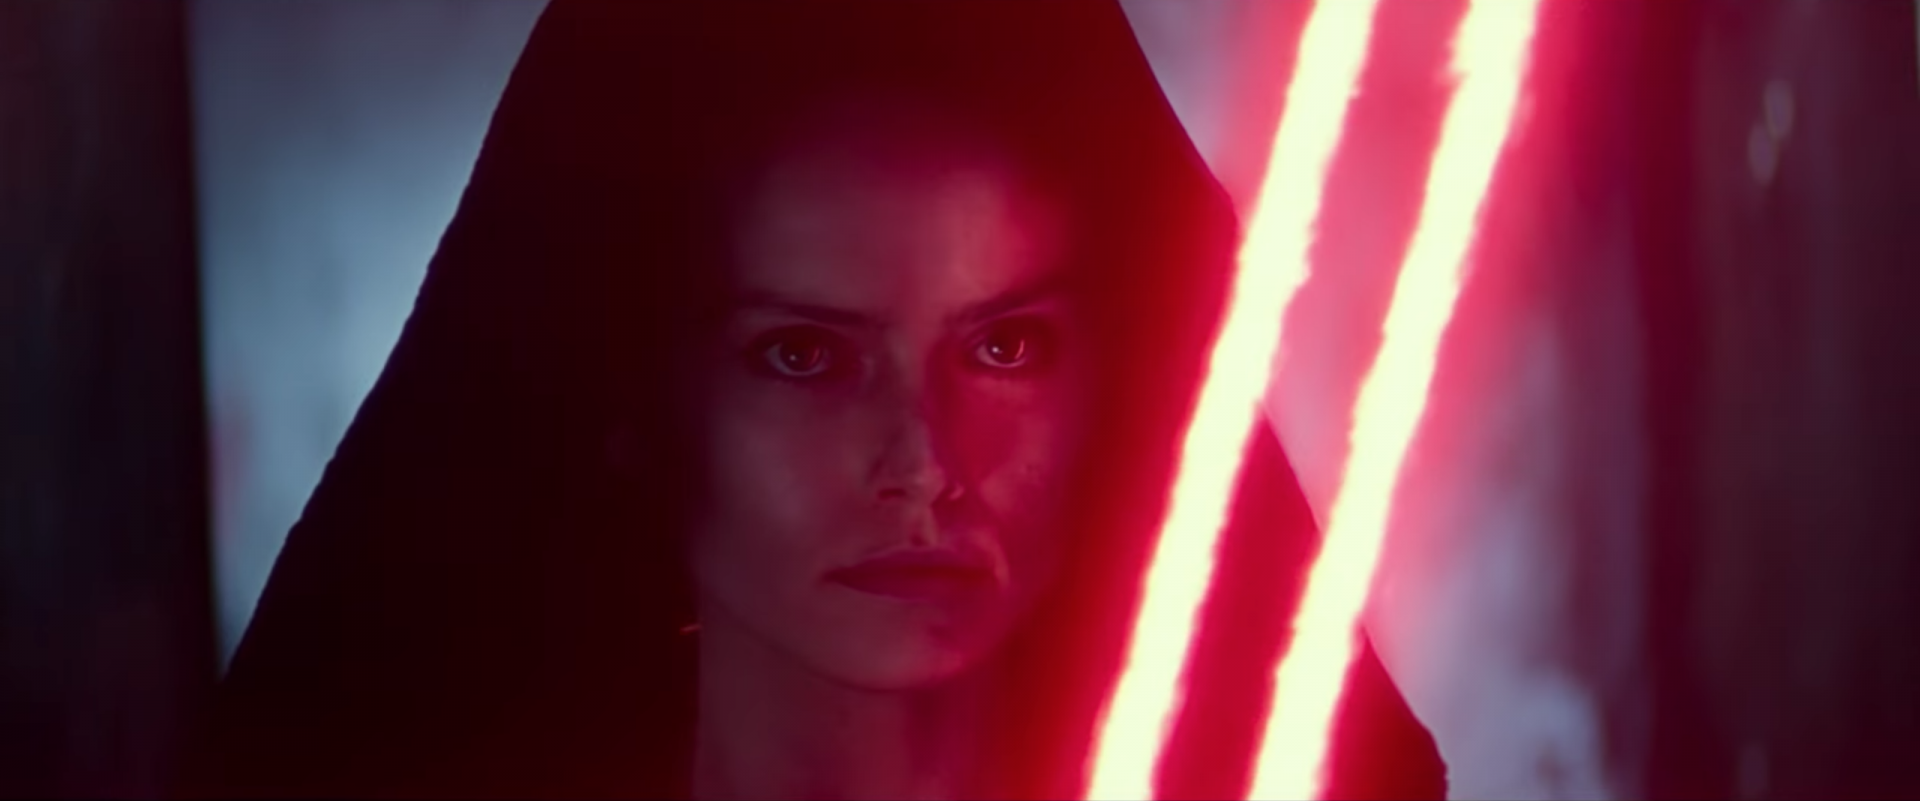 Star Wars Serisinin Son Filmi The Rise of Skywalker’dan Yeni Fragman